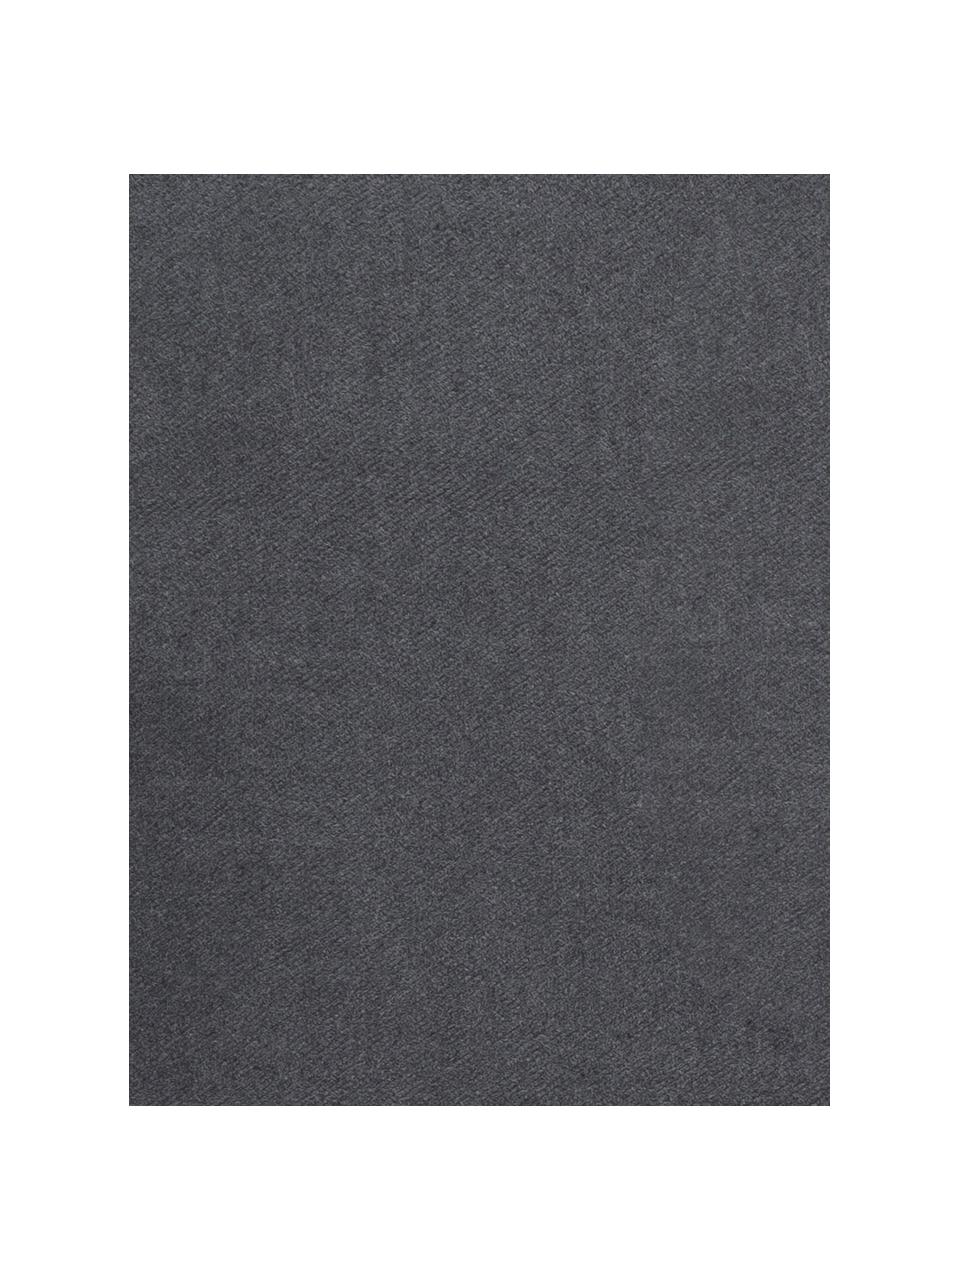 Einfarbige Baumwolldecke Plain in Dunkelgrau, 50% Baumwolle, 50% Acryl, Dunkelgrau, B 140 x L 180 cm